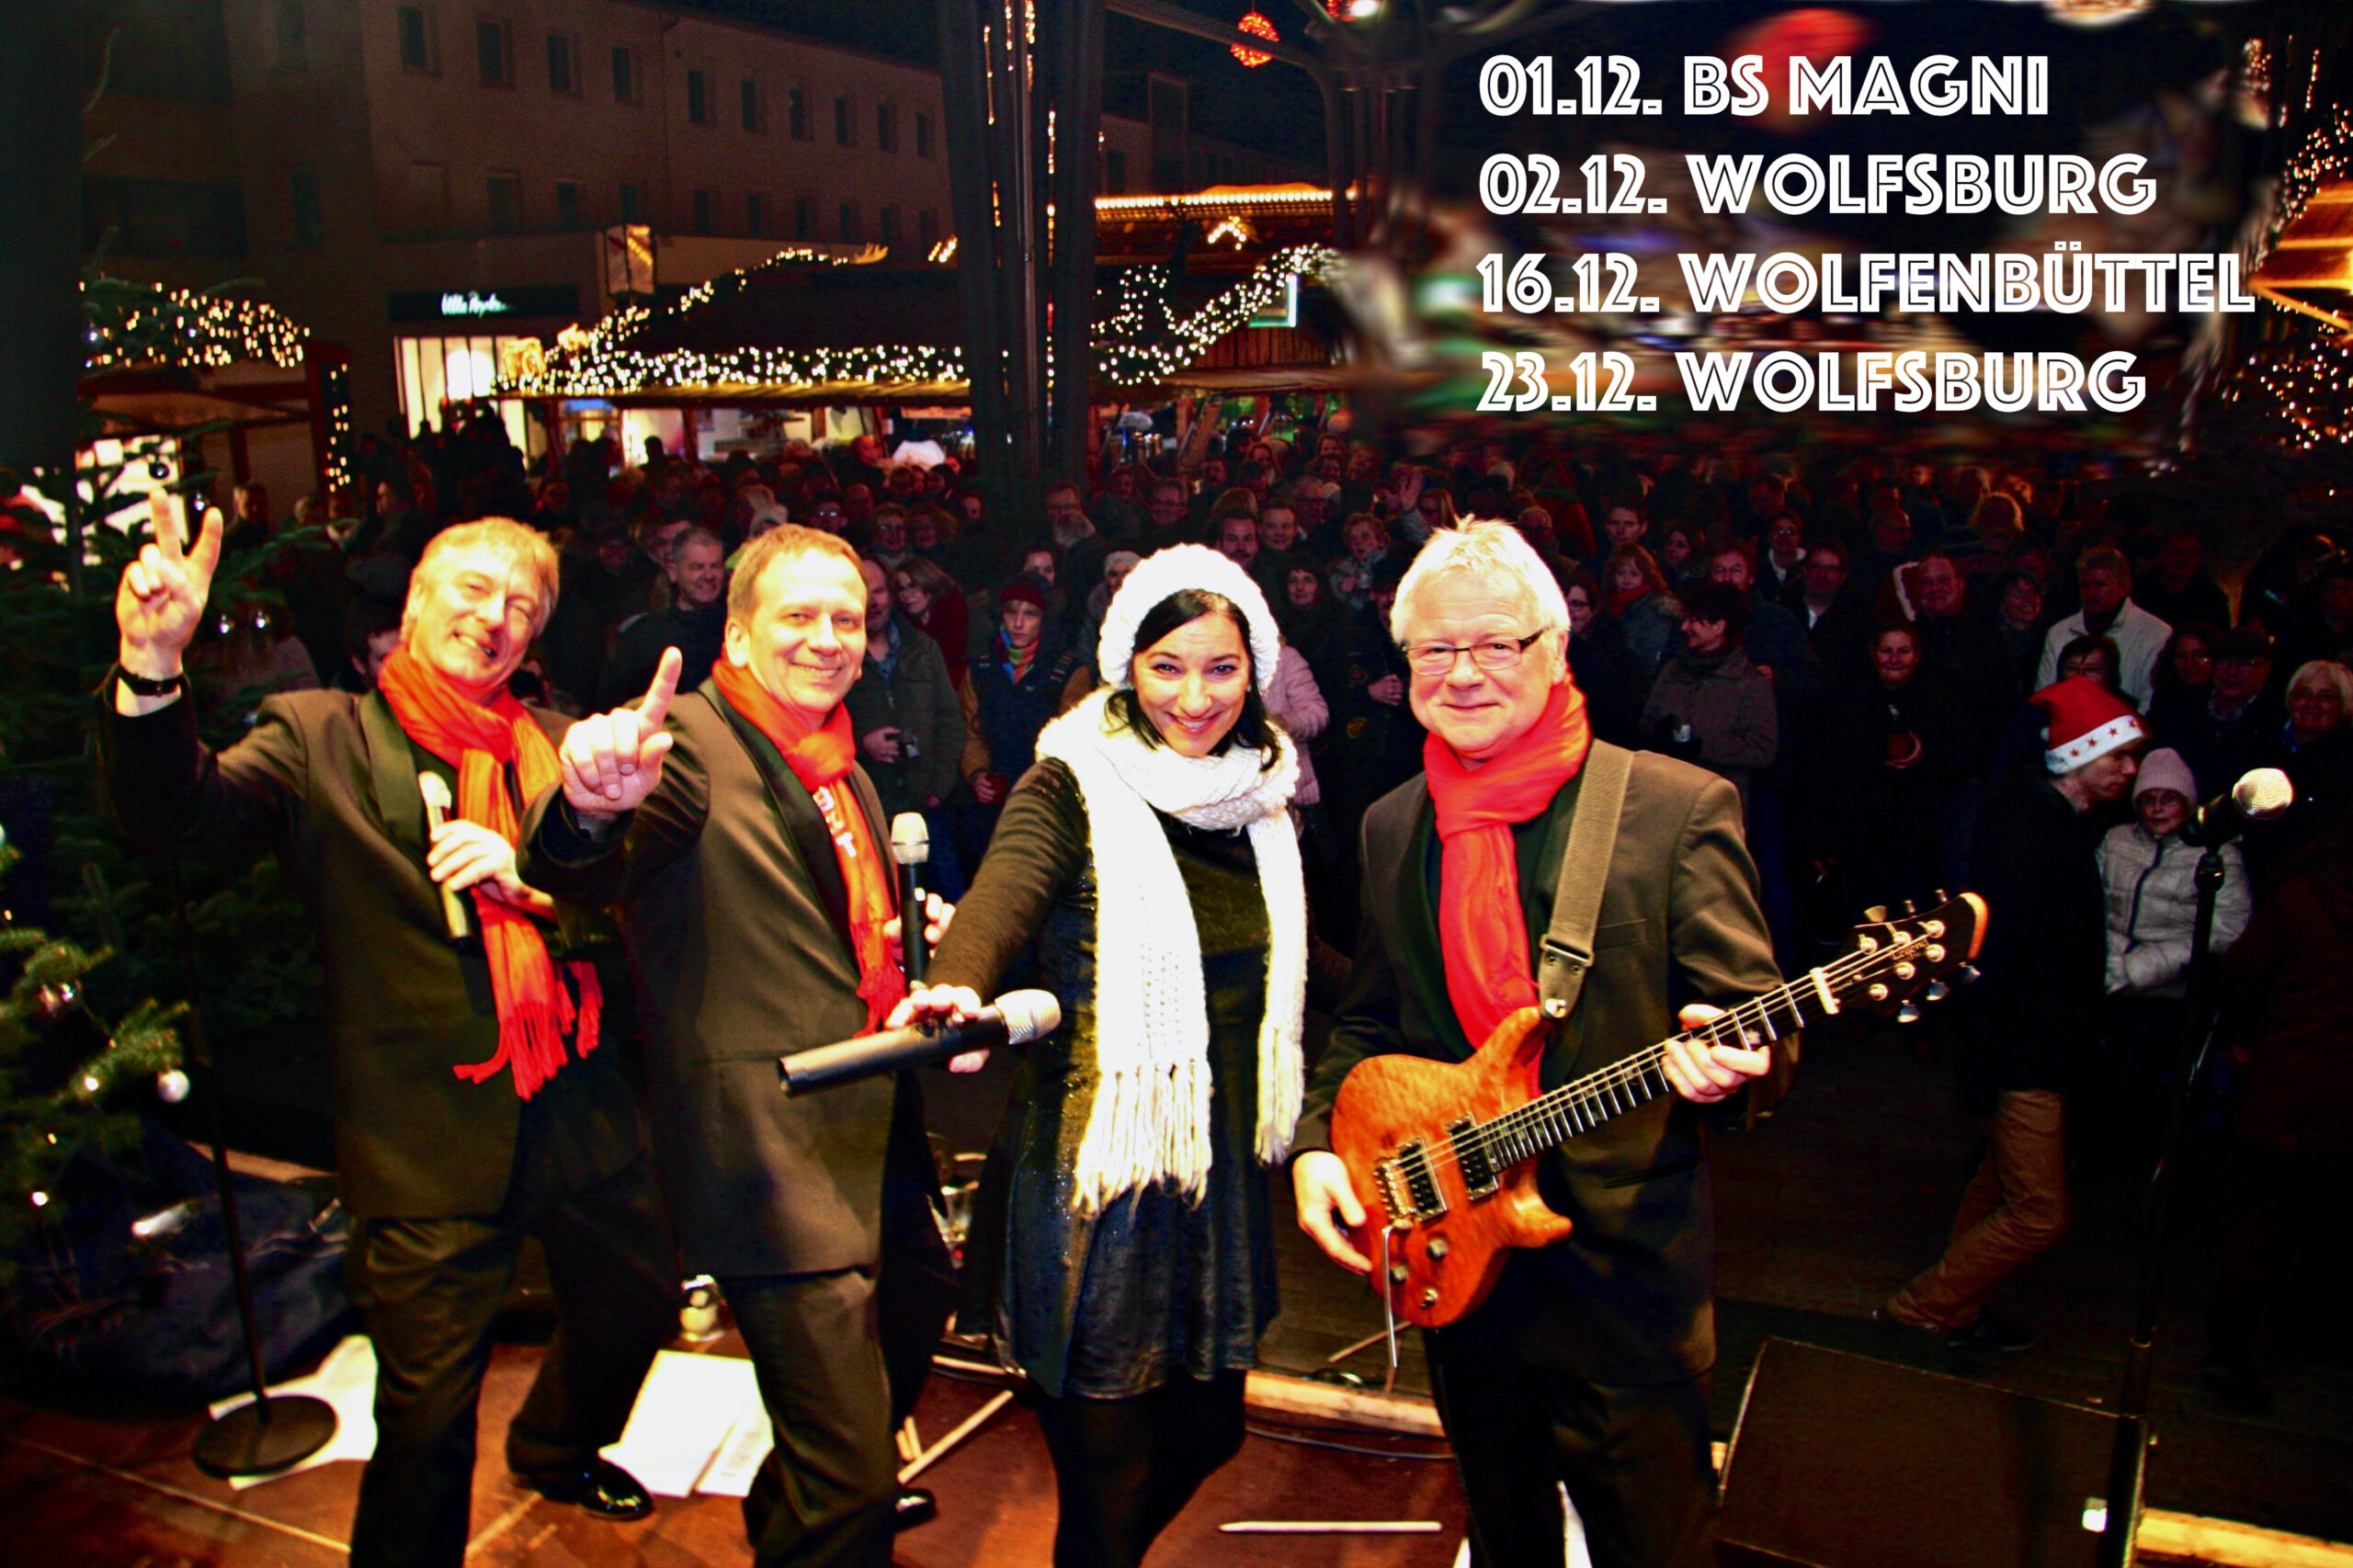 Hobbit Xmas-Live-Acts 2023:
01.12. BS Magni
02.12. Wolfsburg
16.12. Wolfenbüttel
23.12. Wolfsburg